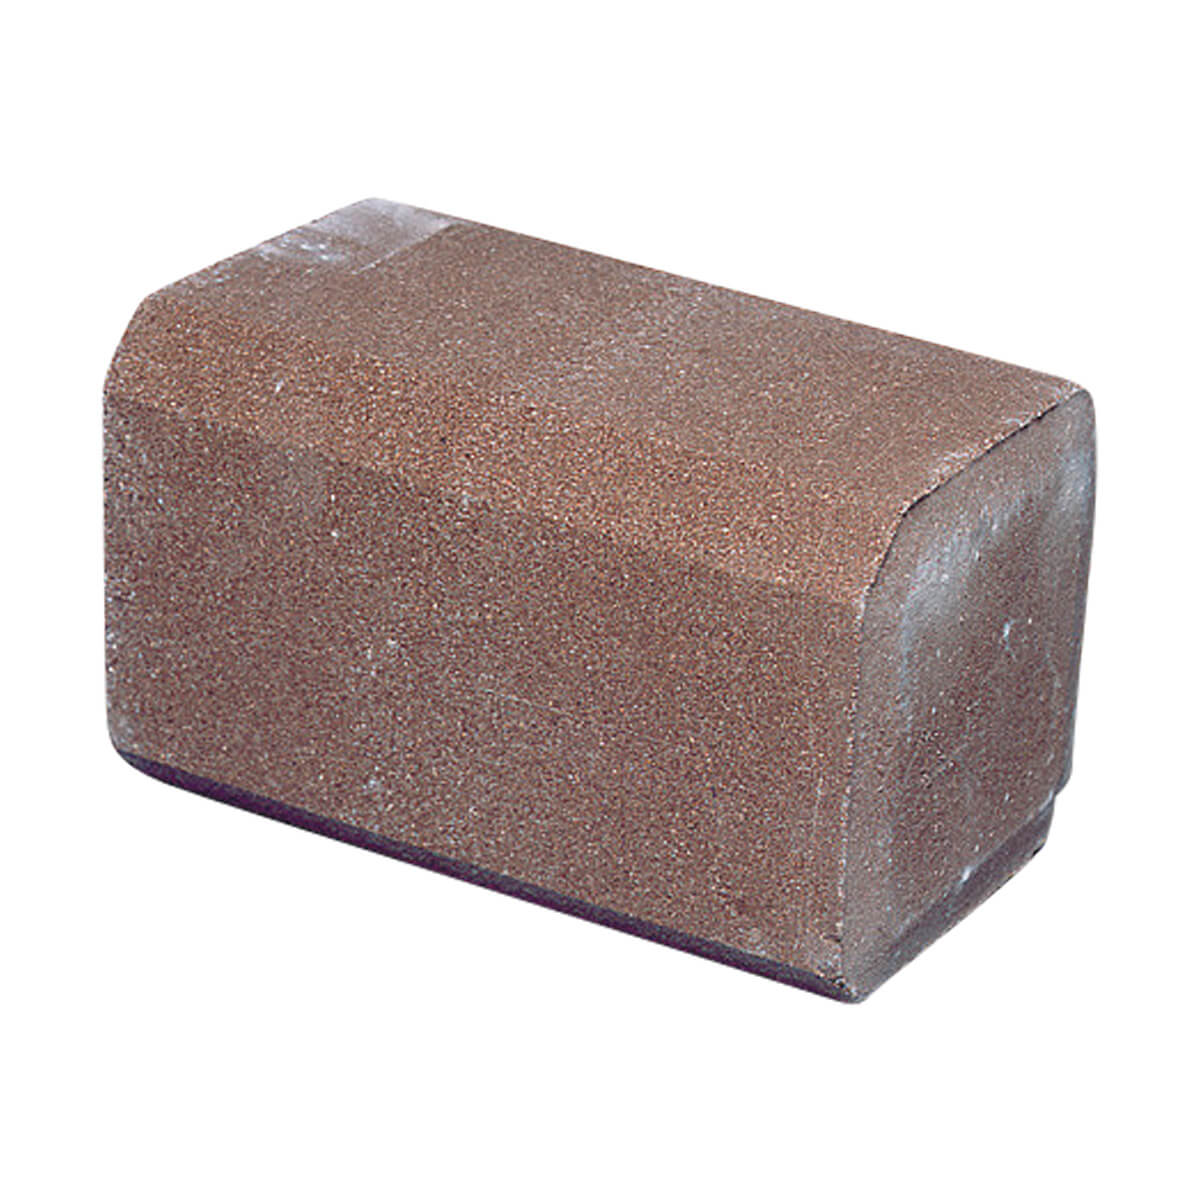 Mineral Block 2:1 - 20 kg